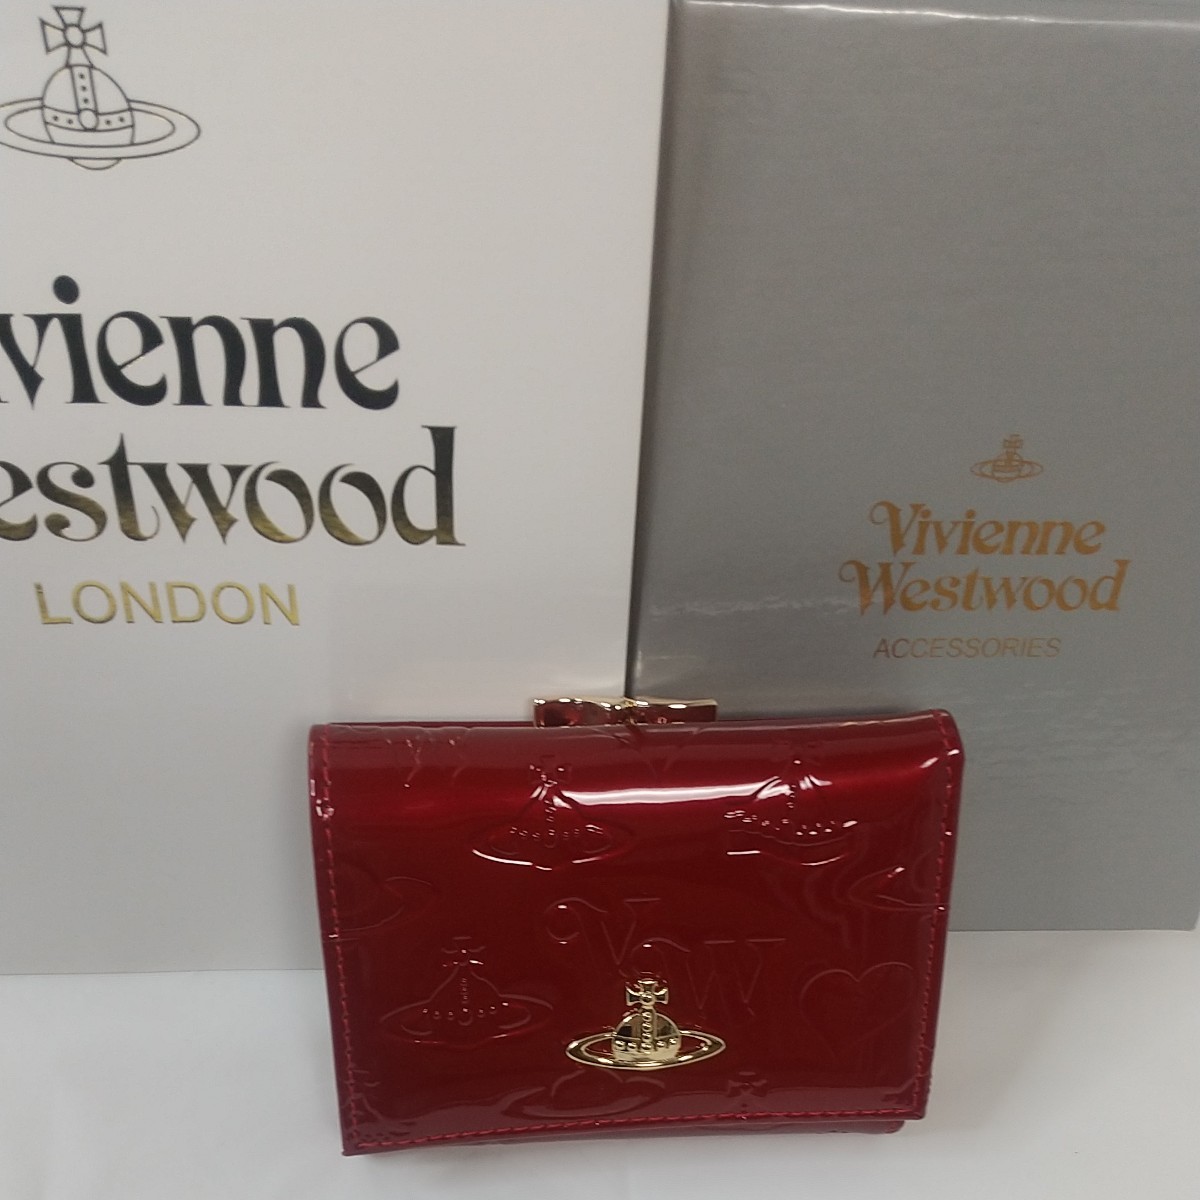 ヴィヴィアン ウエストウッド Vivienne Westwood 3つ折り財布 エナメルレッド かわいい財布レディース 新品未使用